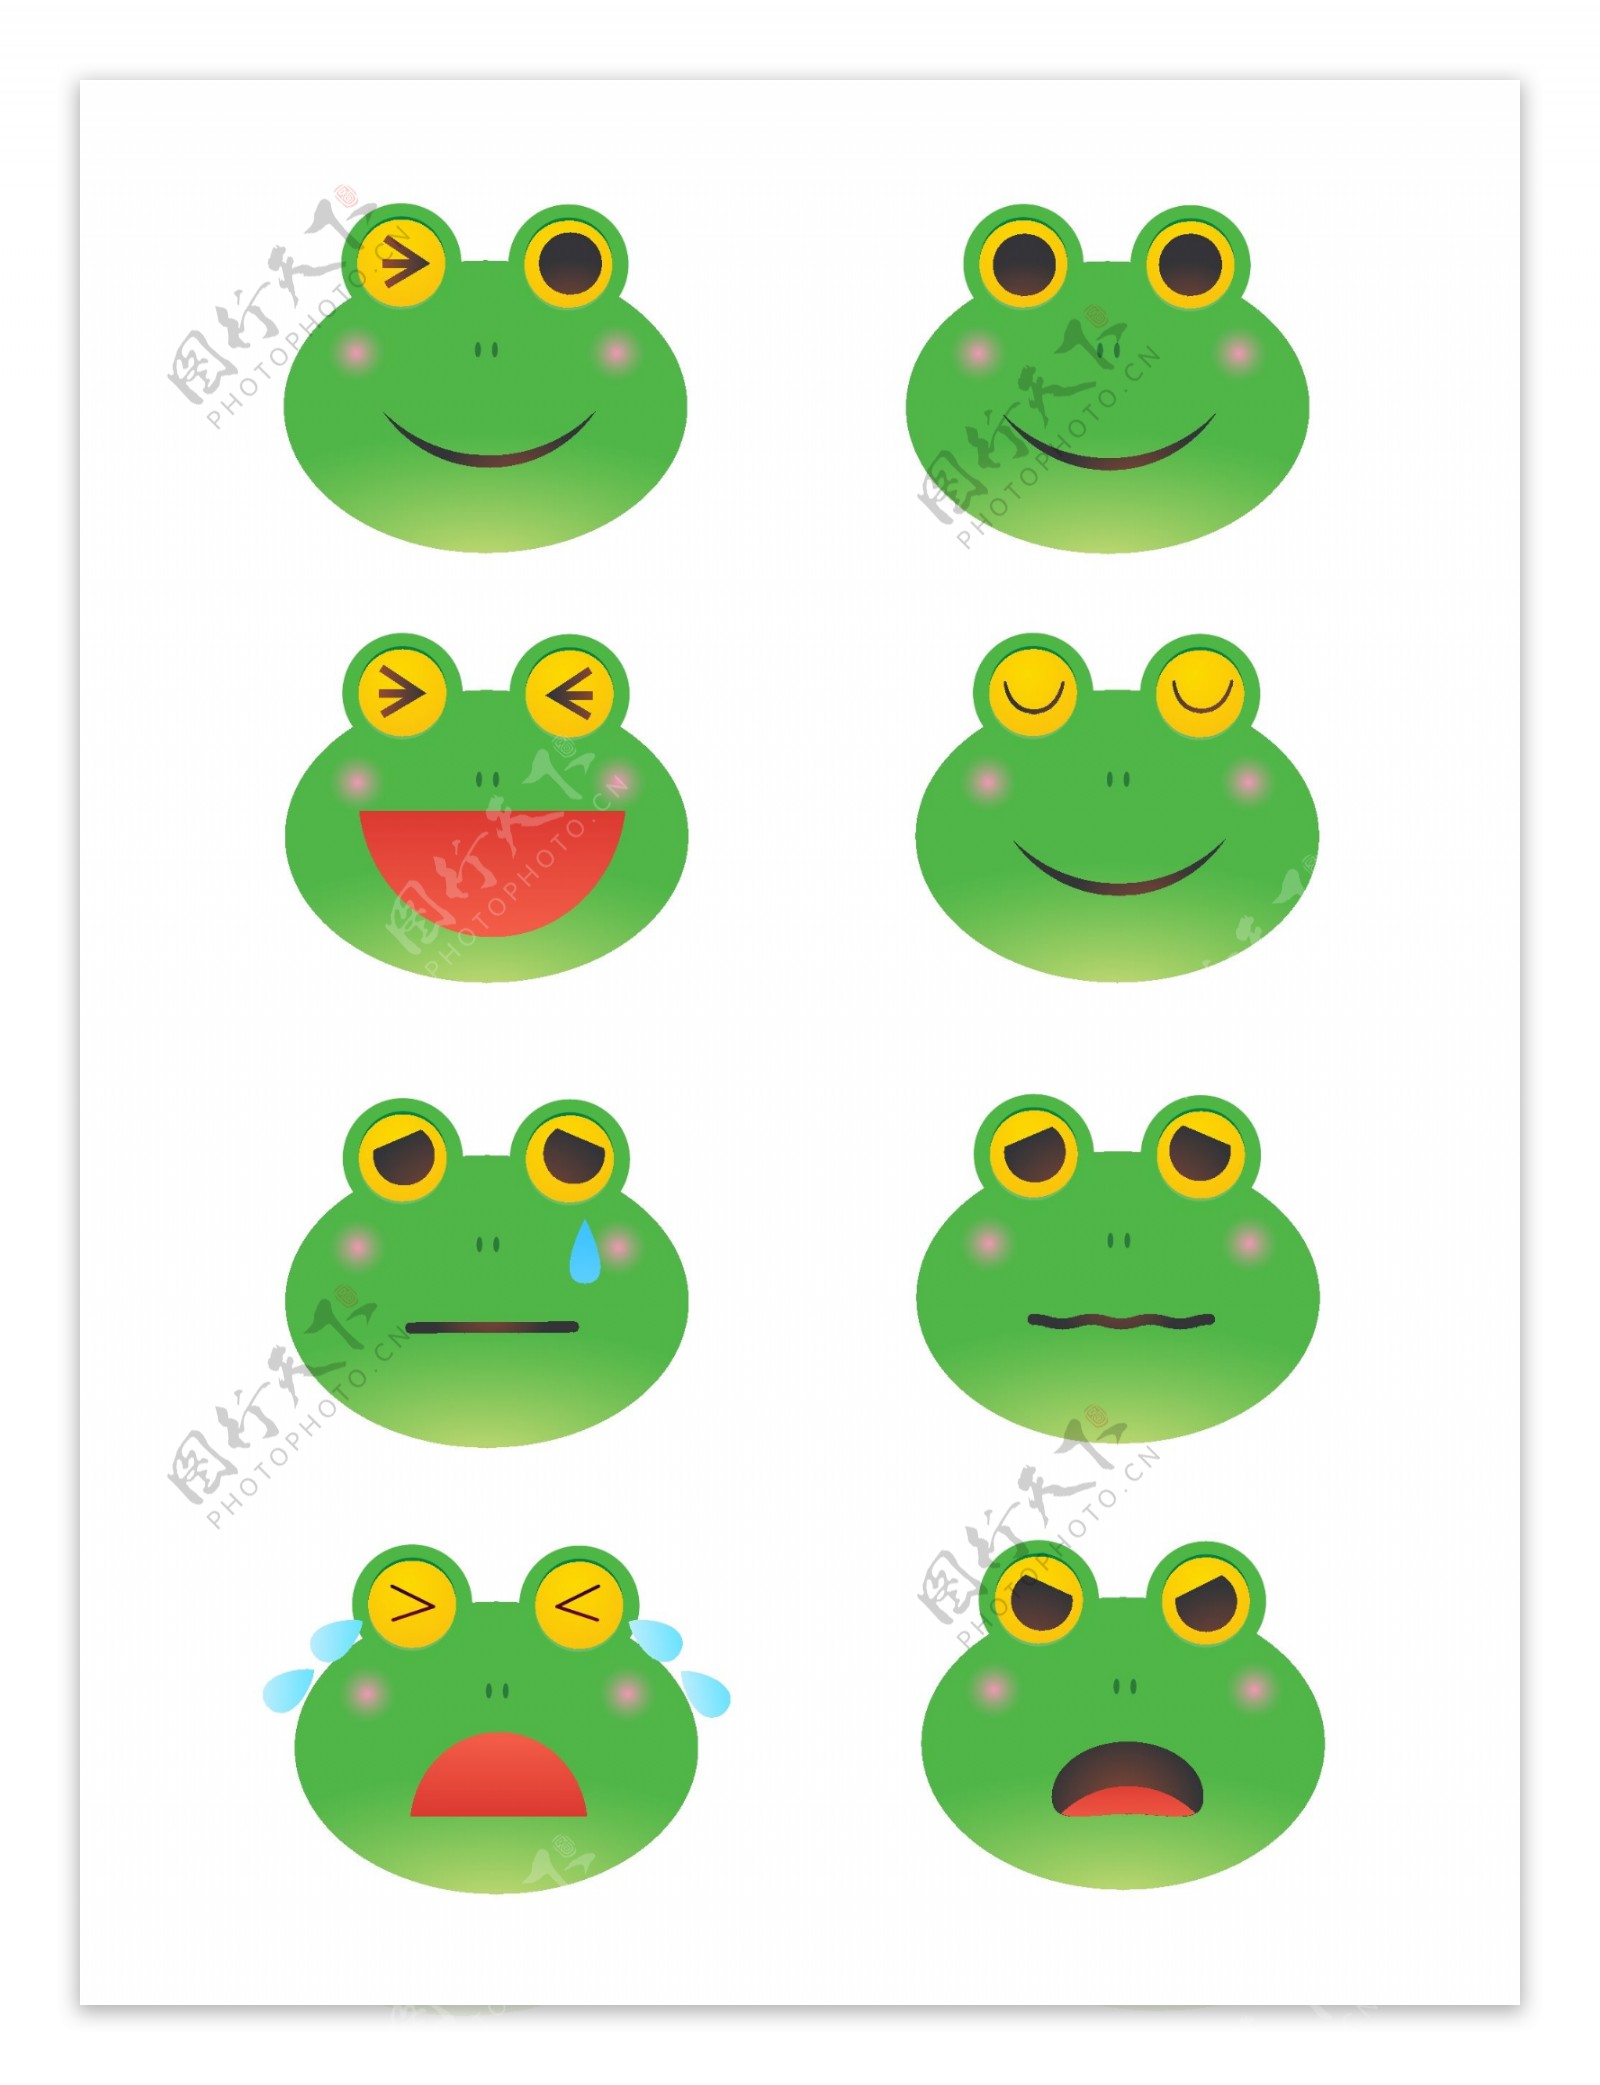 卡通可爱绿色青蛙表情包元素